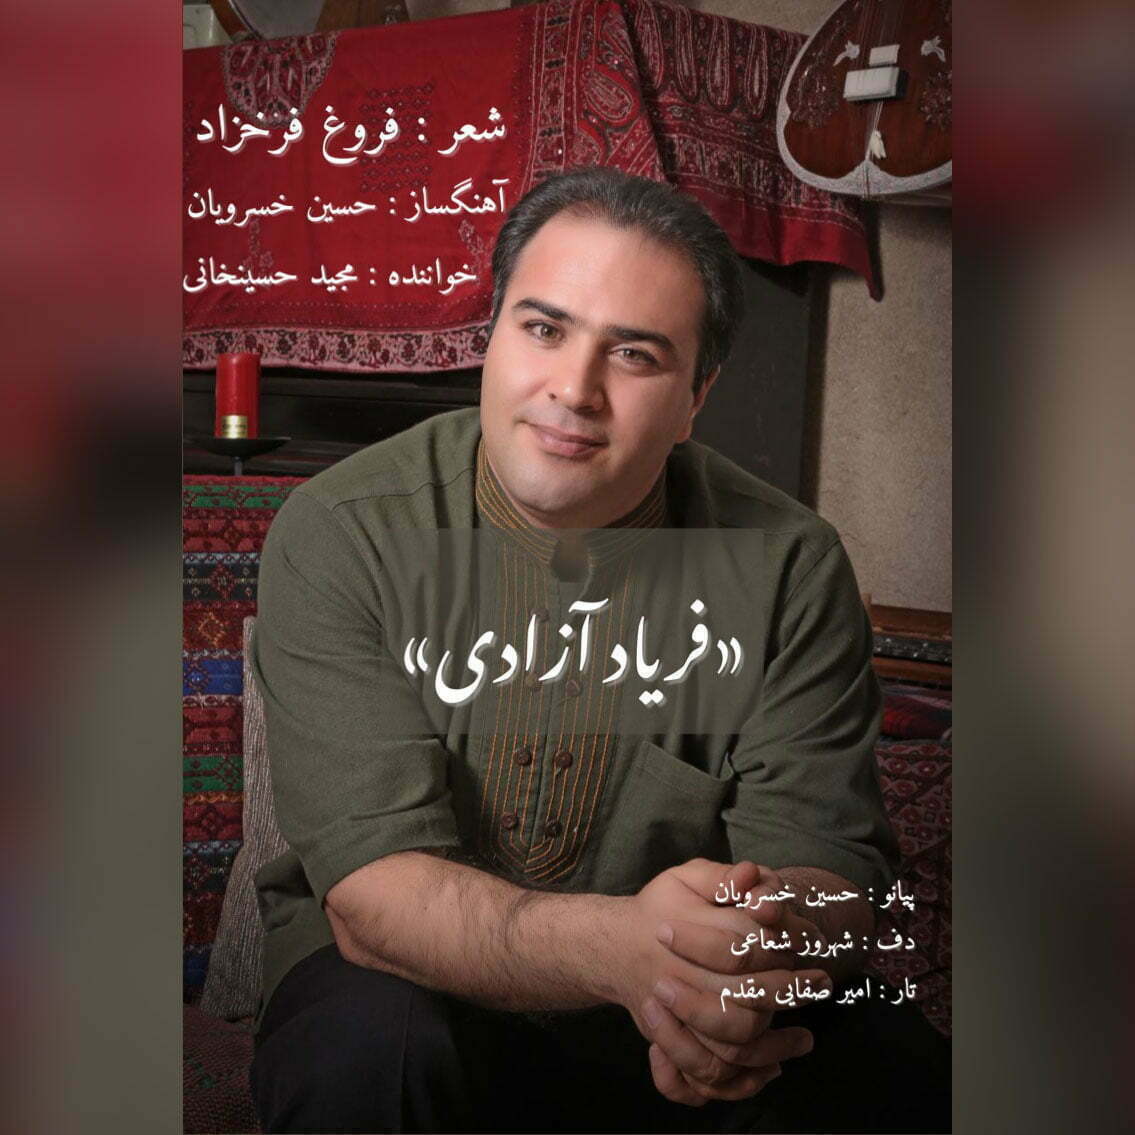 دانلود آهنگ جدید مجید حسین خانی با عنوان فریاد آزادی